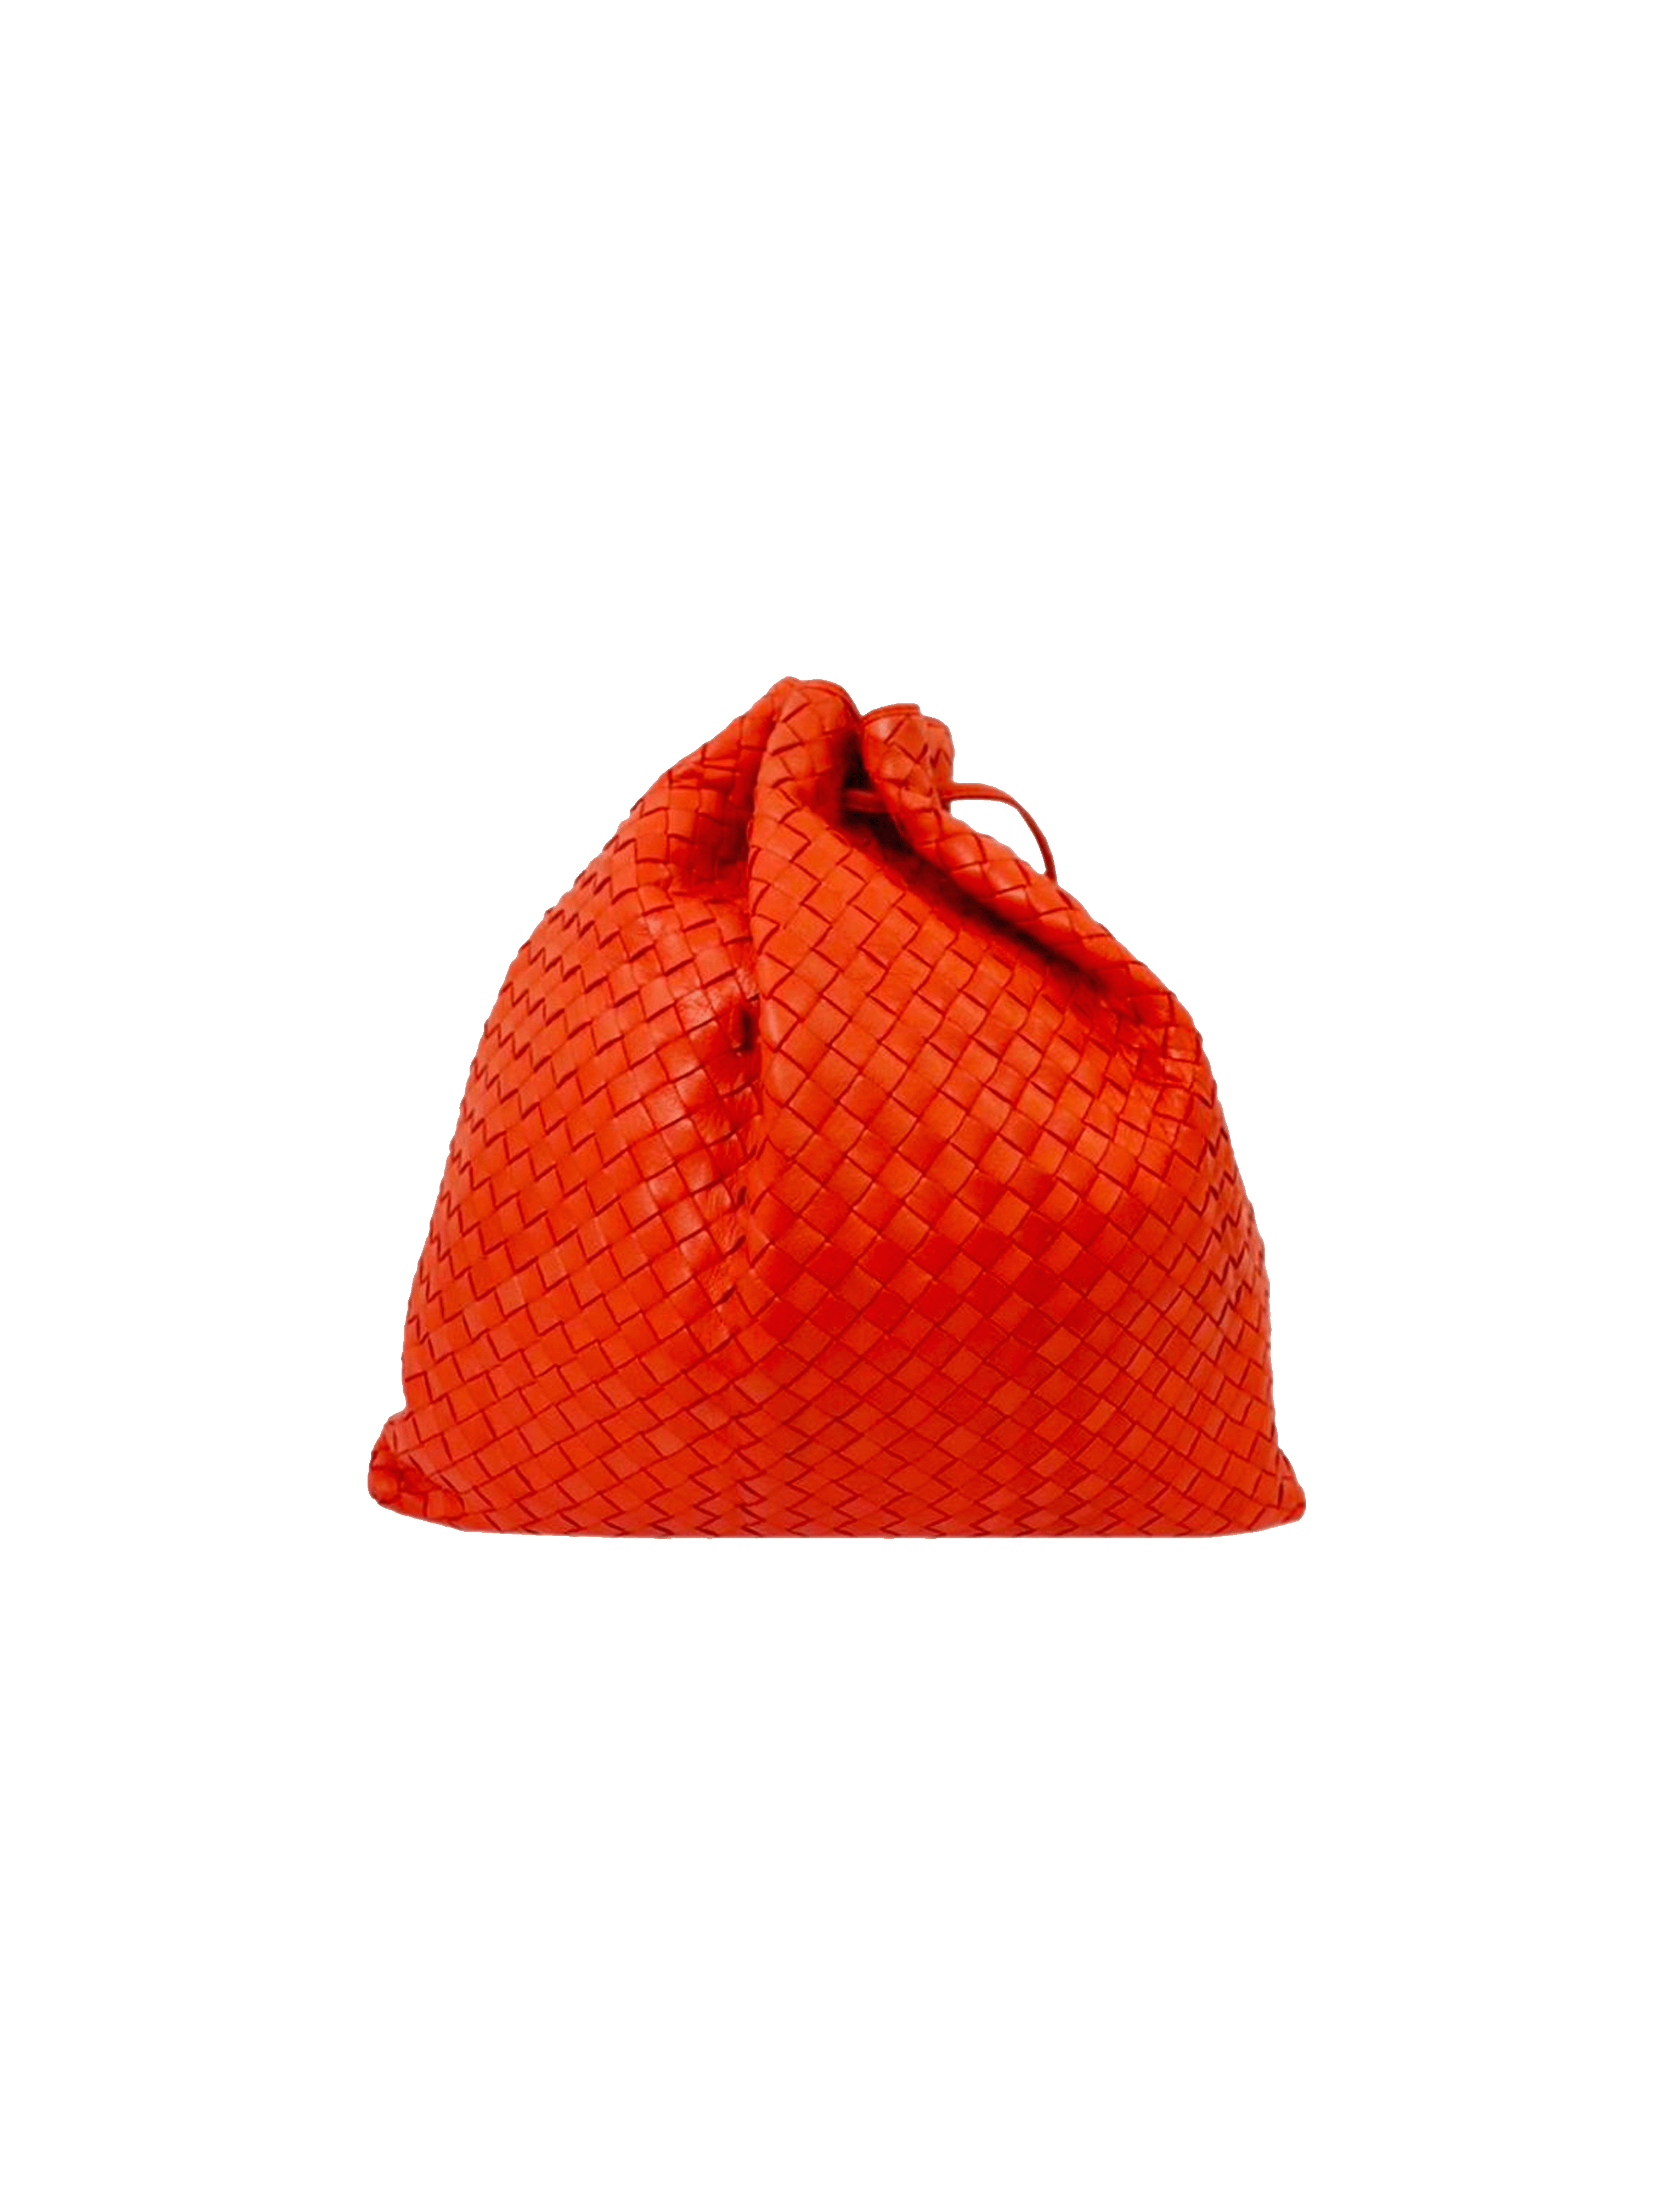 Bottega Veneta 2010s Intrecciato Red Leather Drawstring Bag